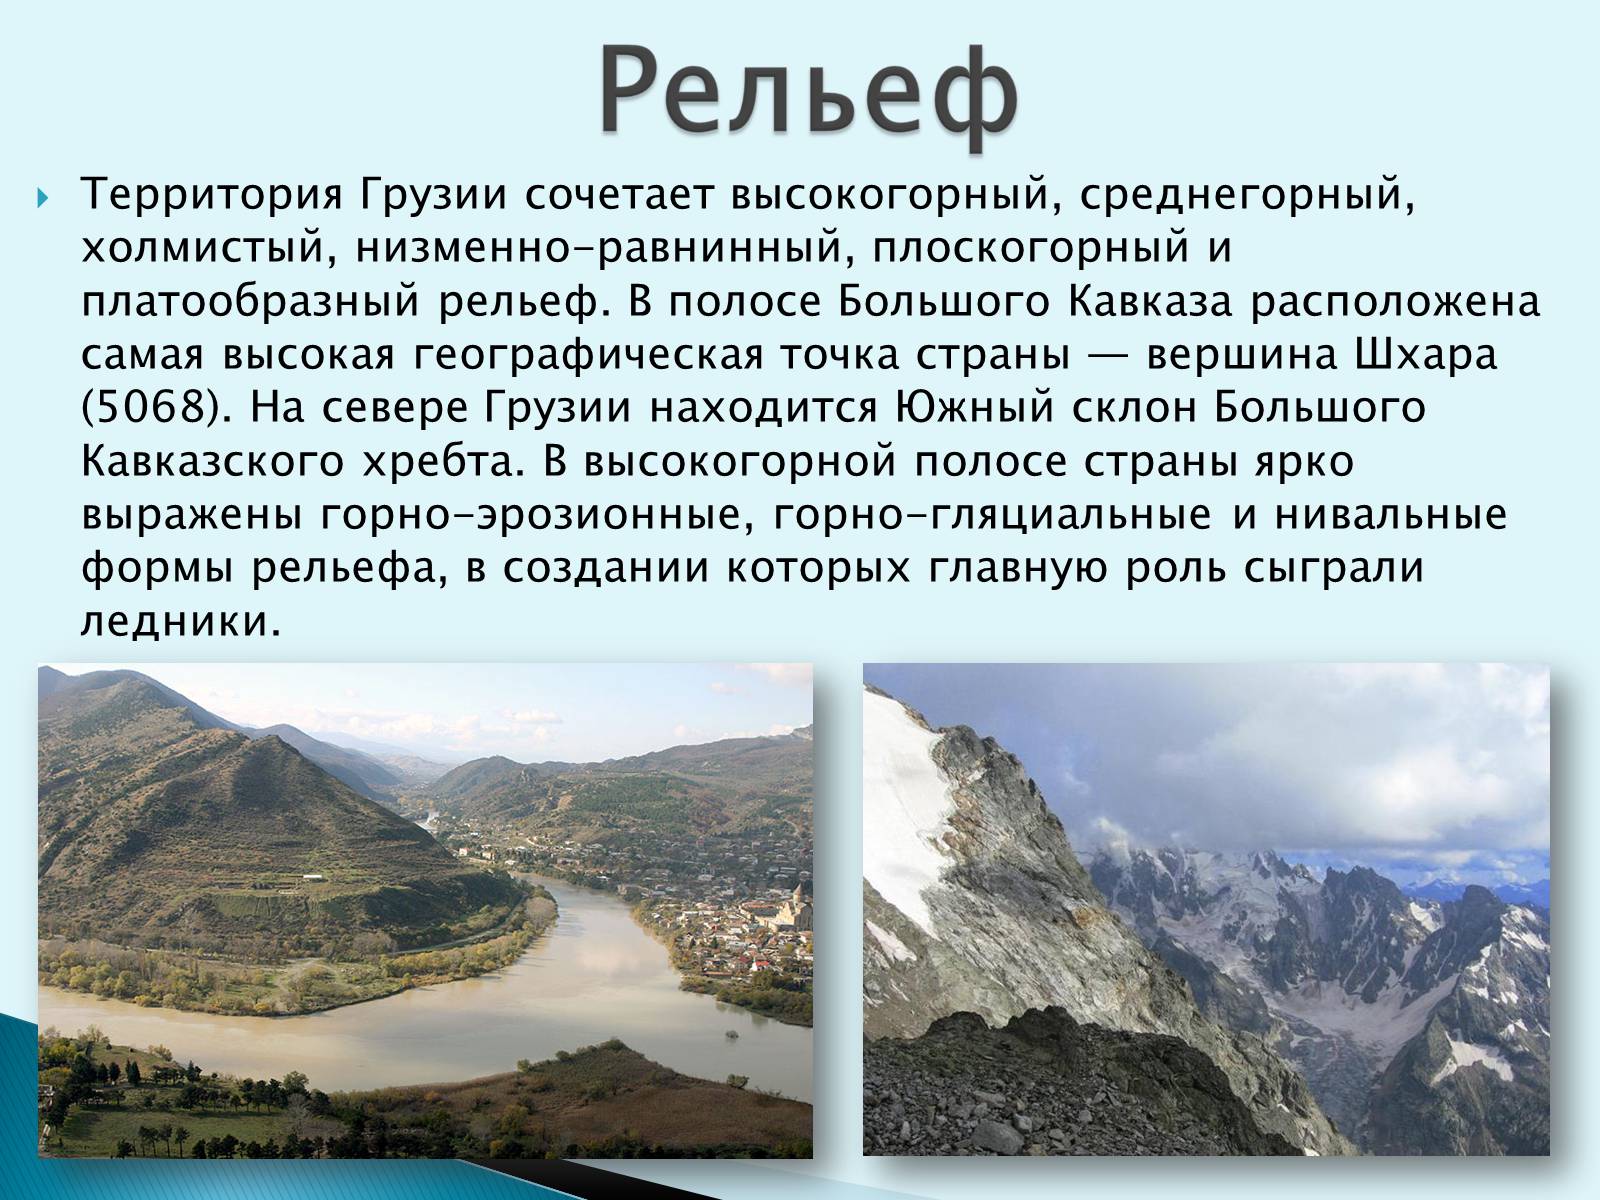 Рельеф высокогорного Дагестана кратко